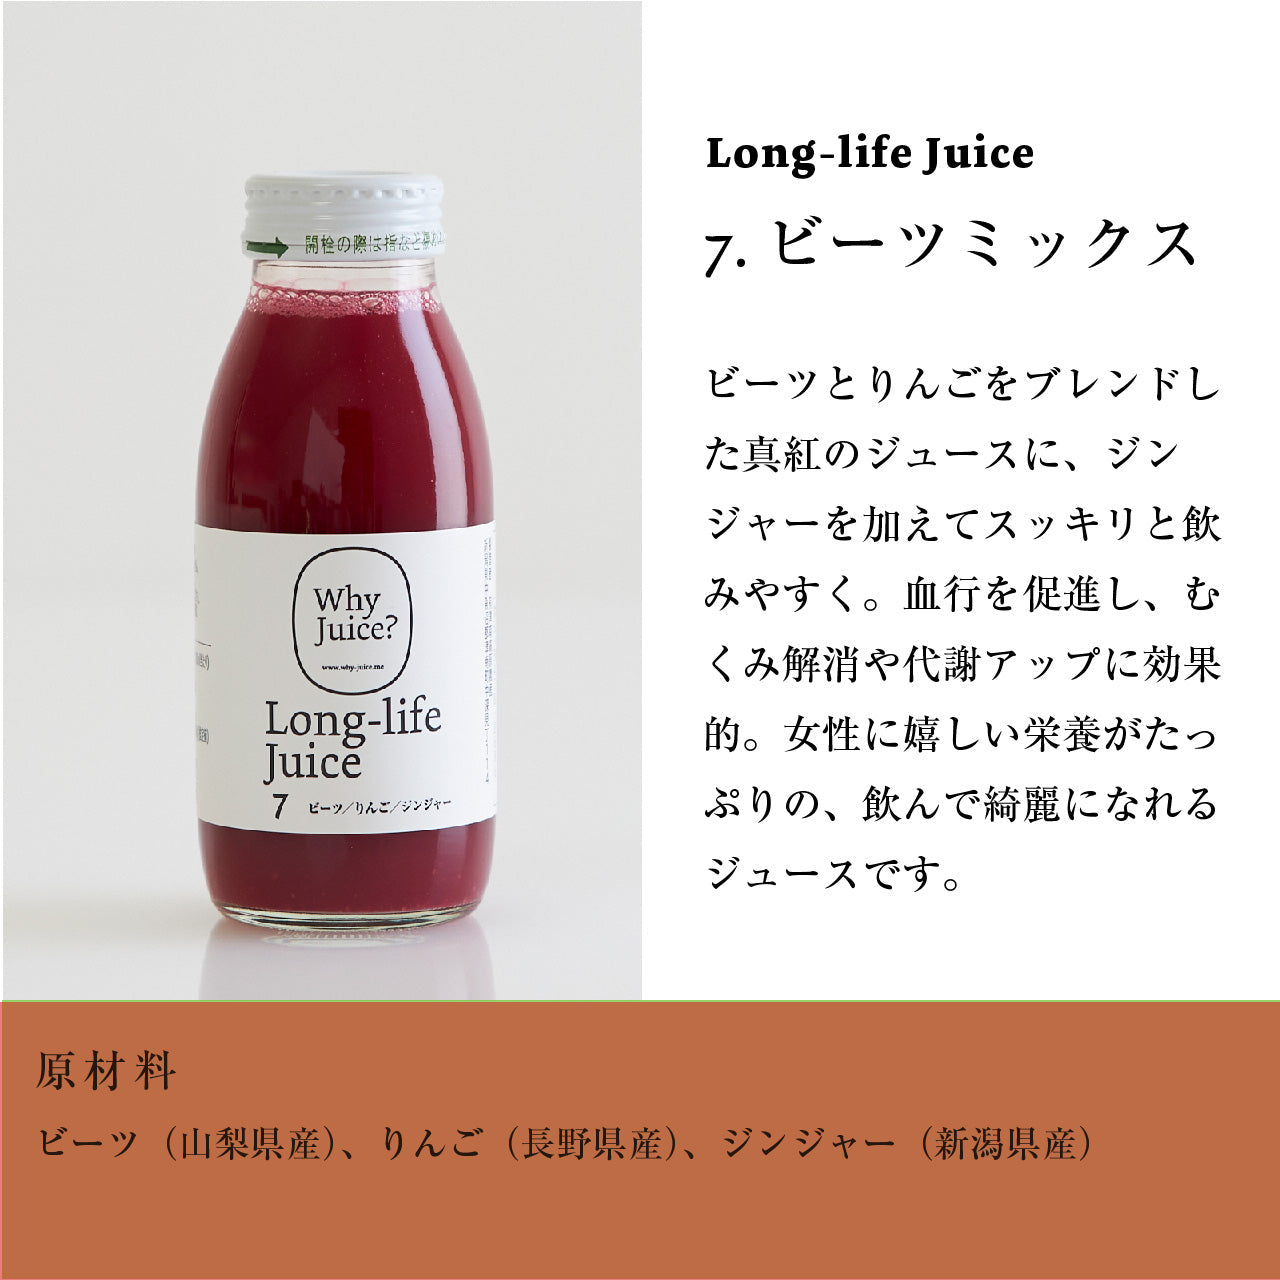 Long-life Juice 3本ギフトボックス(お野菜たっぷりセット)